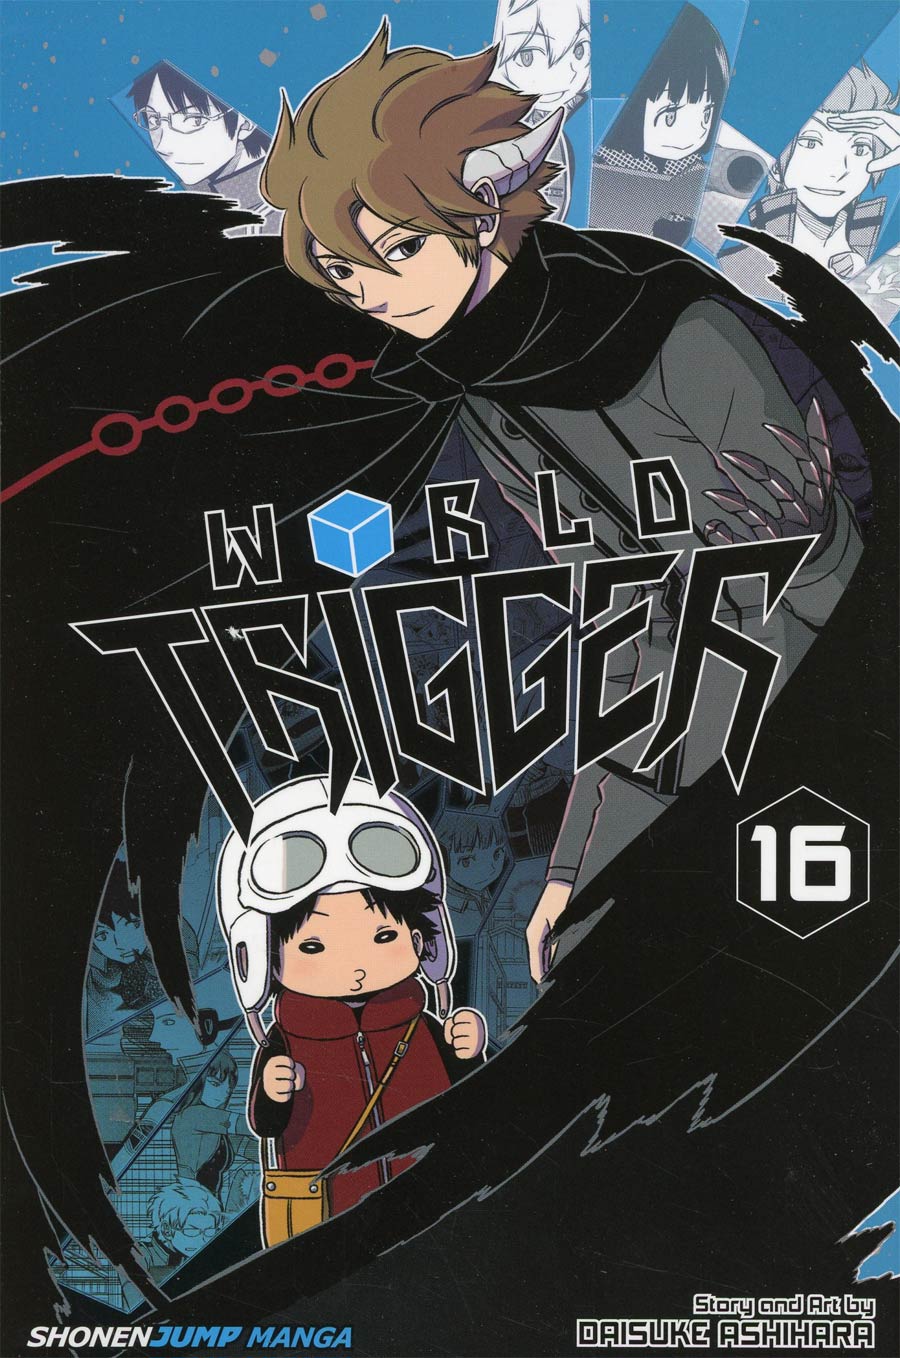 World Trigger Vol 16 TP